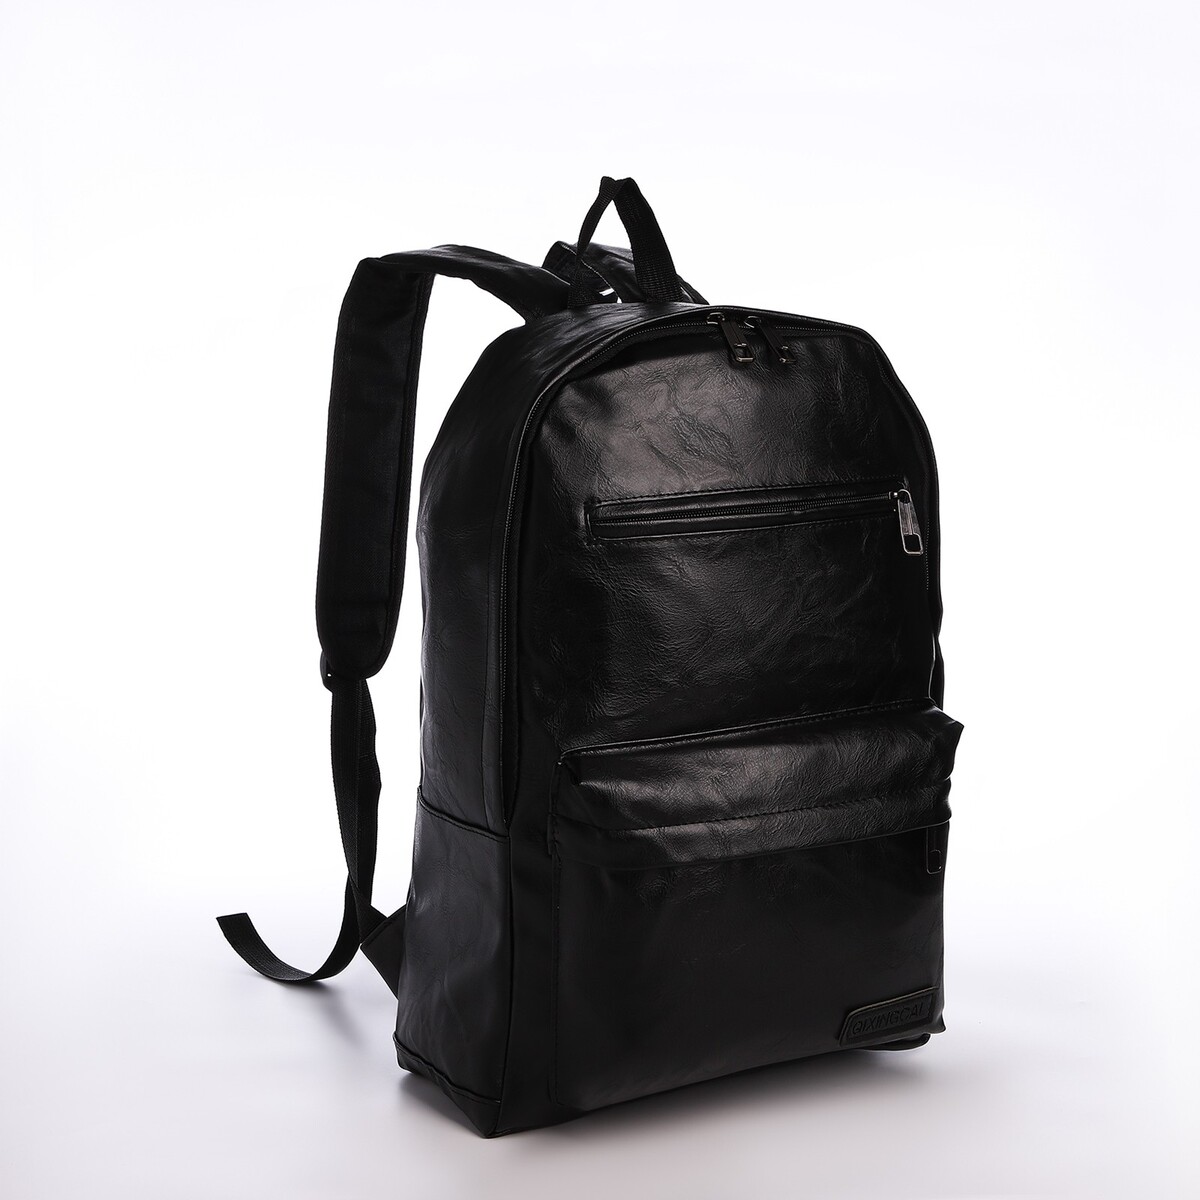 Рюкзак городской из искусственной кожи на молнии, 4 кармана, цвет черный pixie рюкзак городской 267103